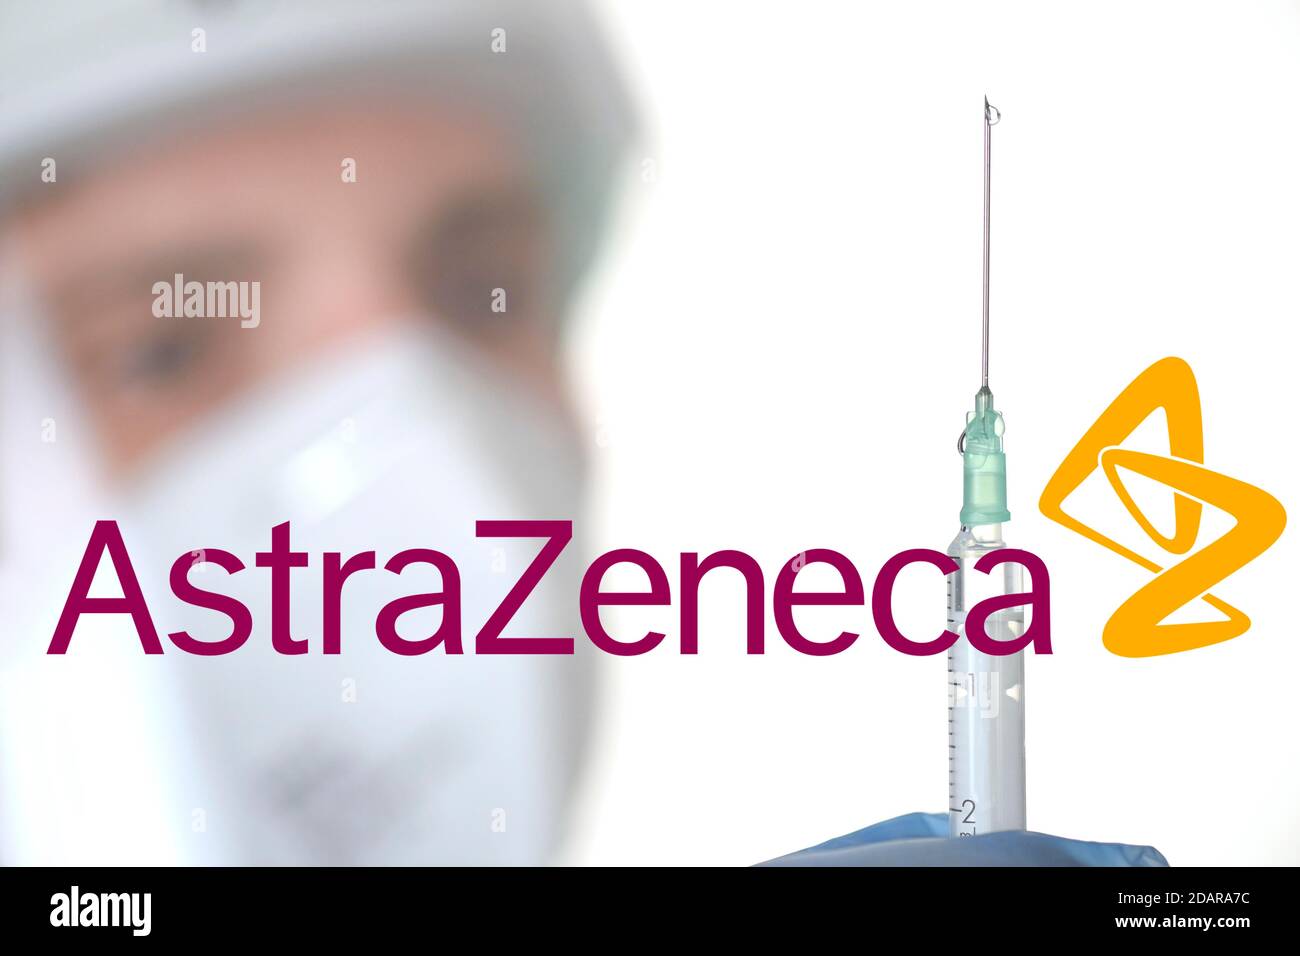 Symbole photo vaccin Corona de la société ASTRAZENECA, homme avec seringue, crise corona, Bade-Wurtemberg, Allemagne Banque D'Images